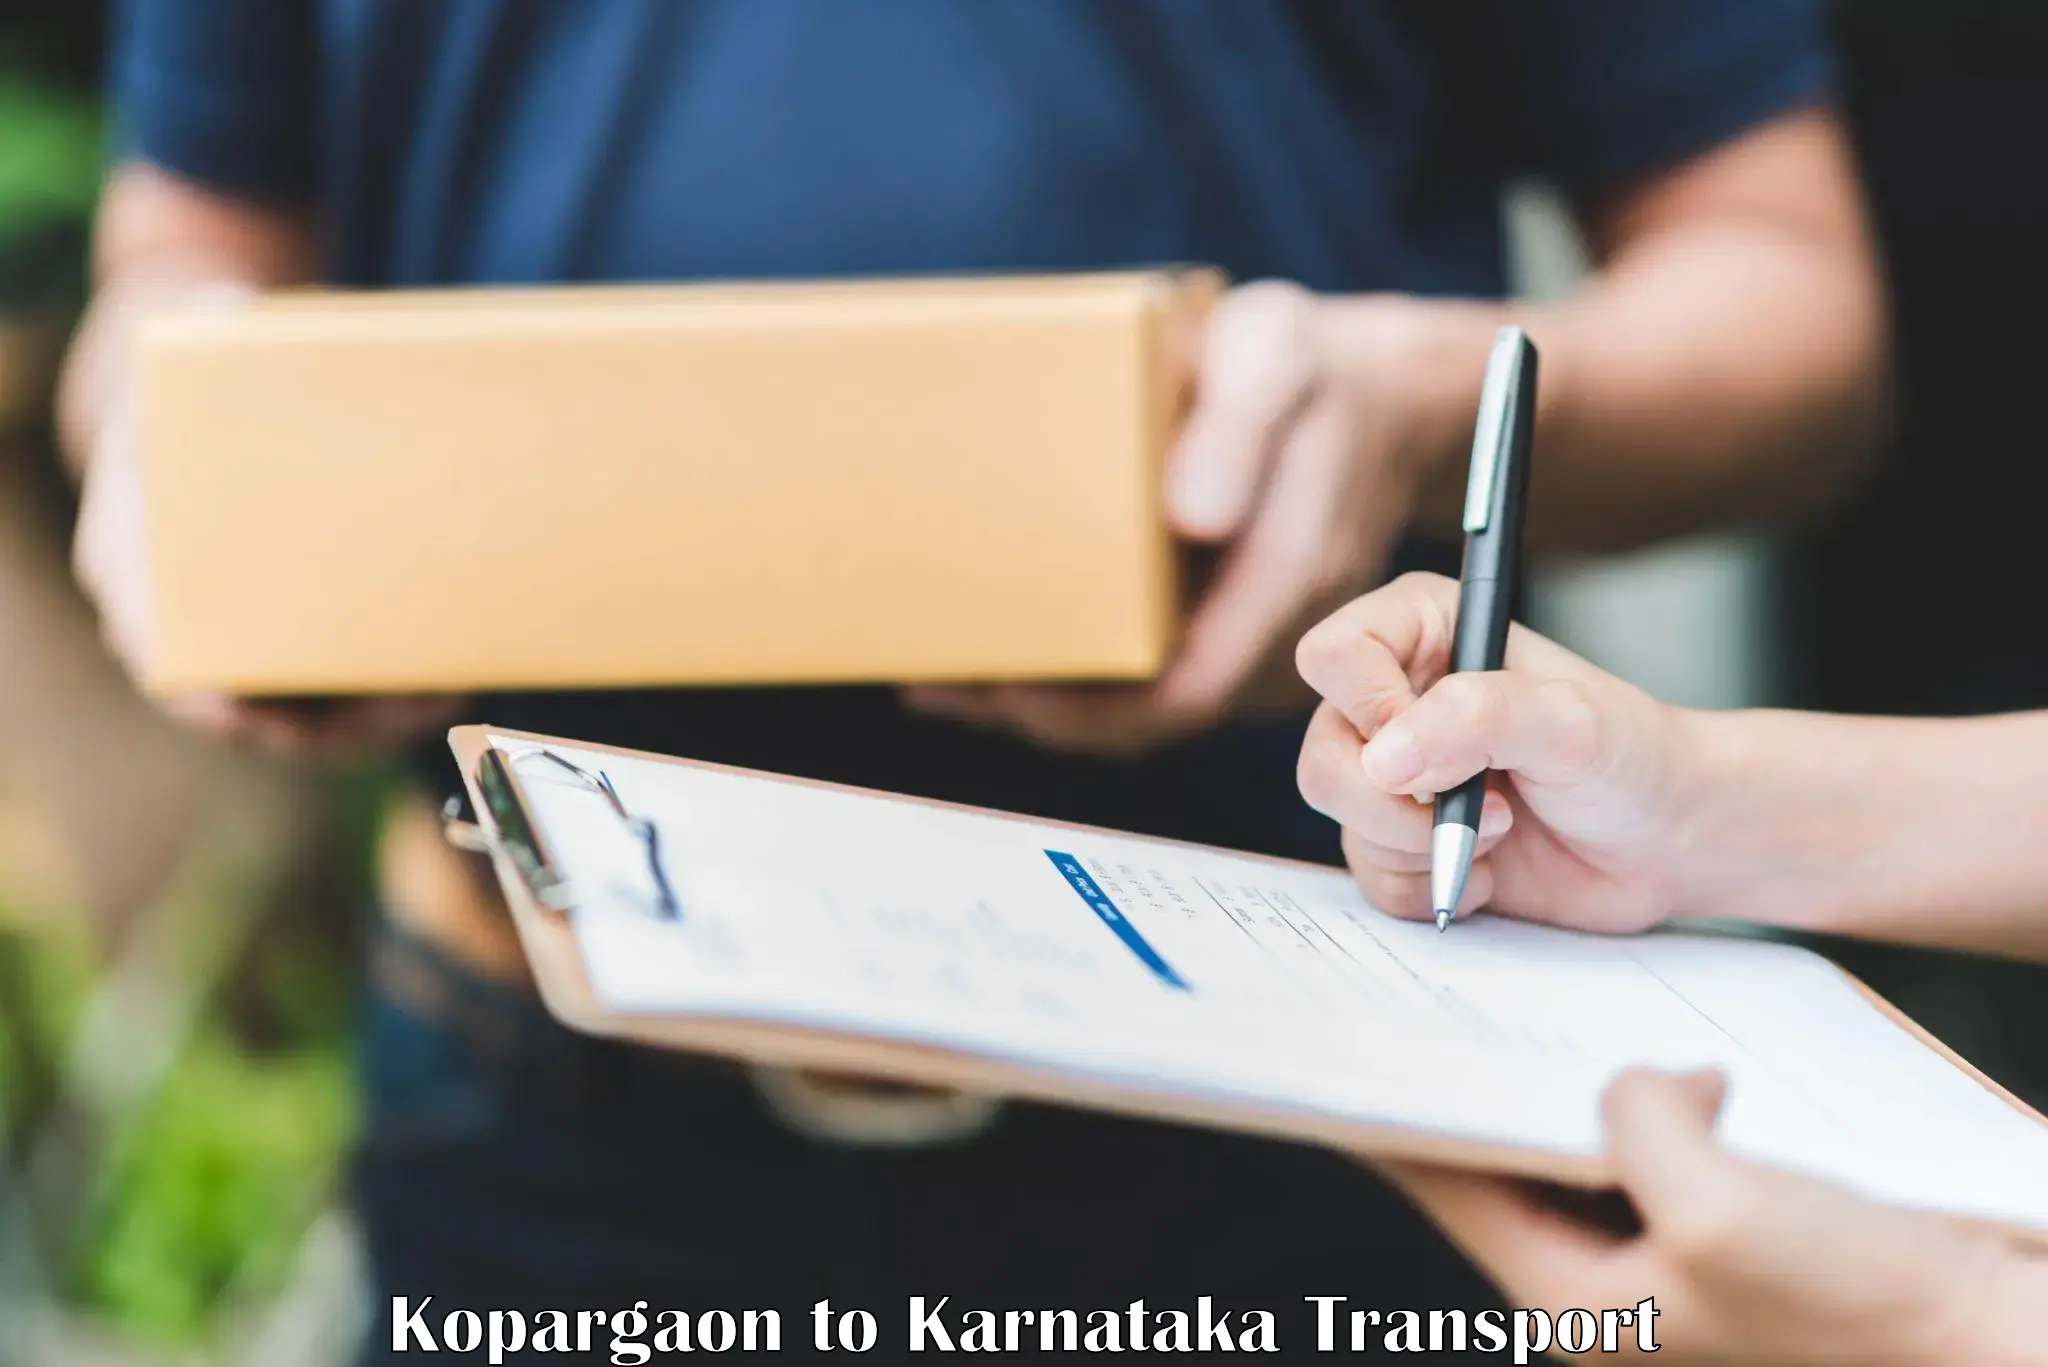 Online transport booking Kopargaon to Khanapur Karnataka